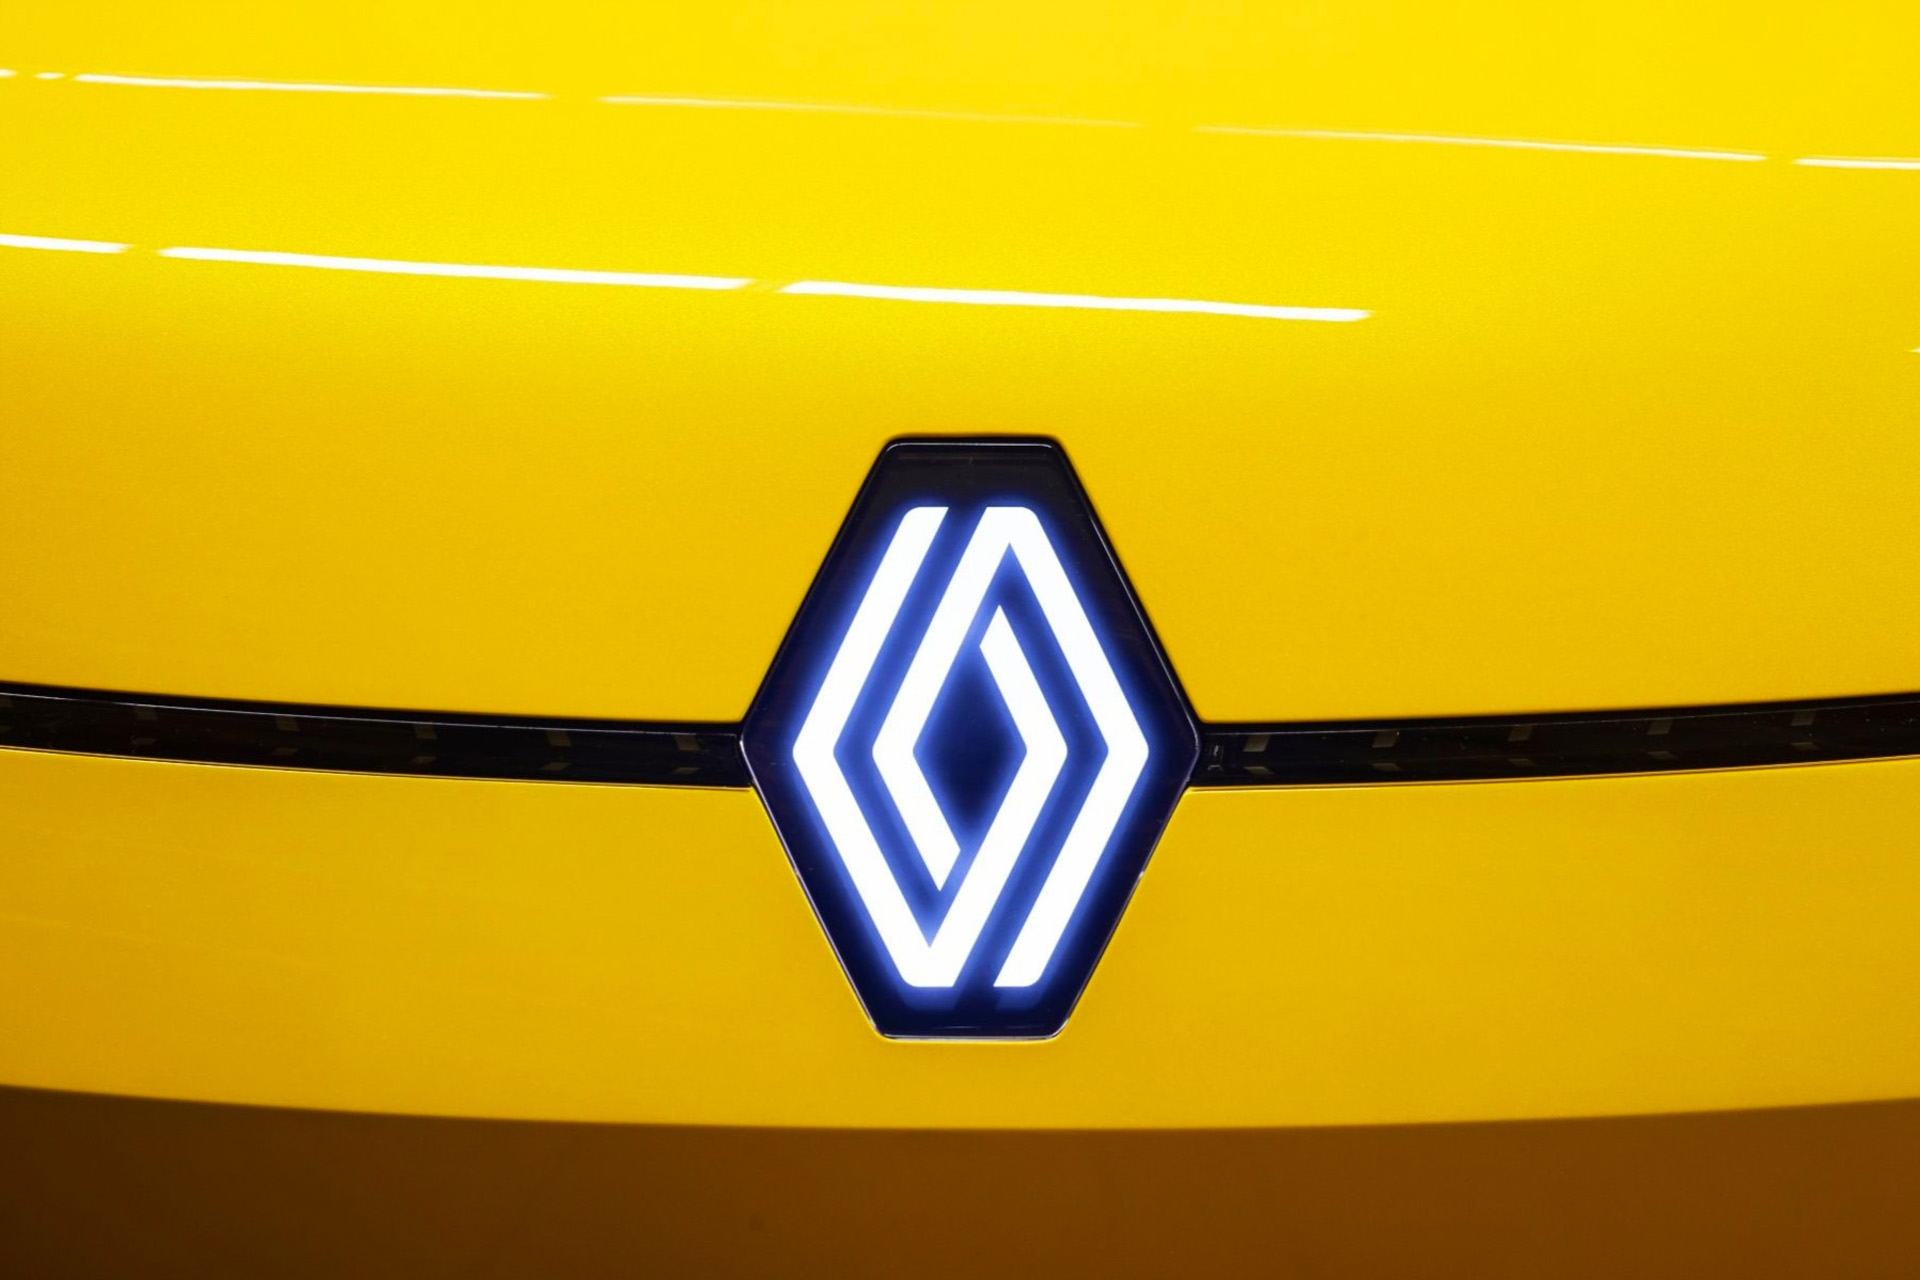 Новый логотип Renault светится на автомобильной решетке